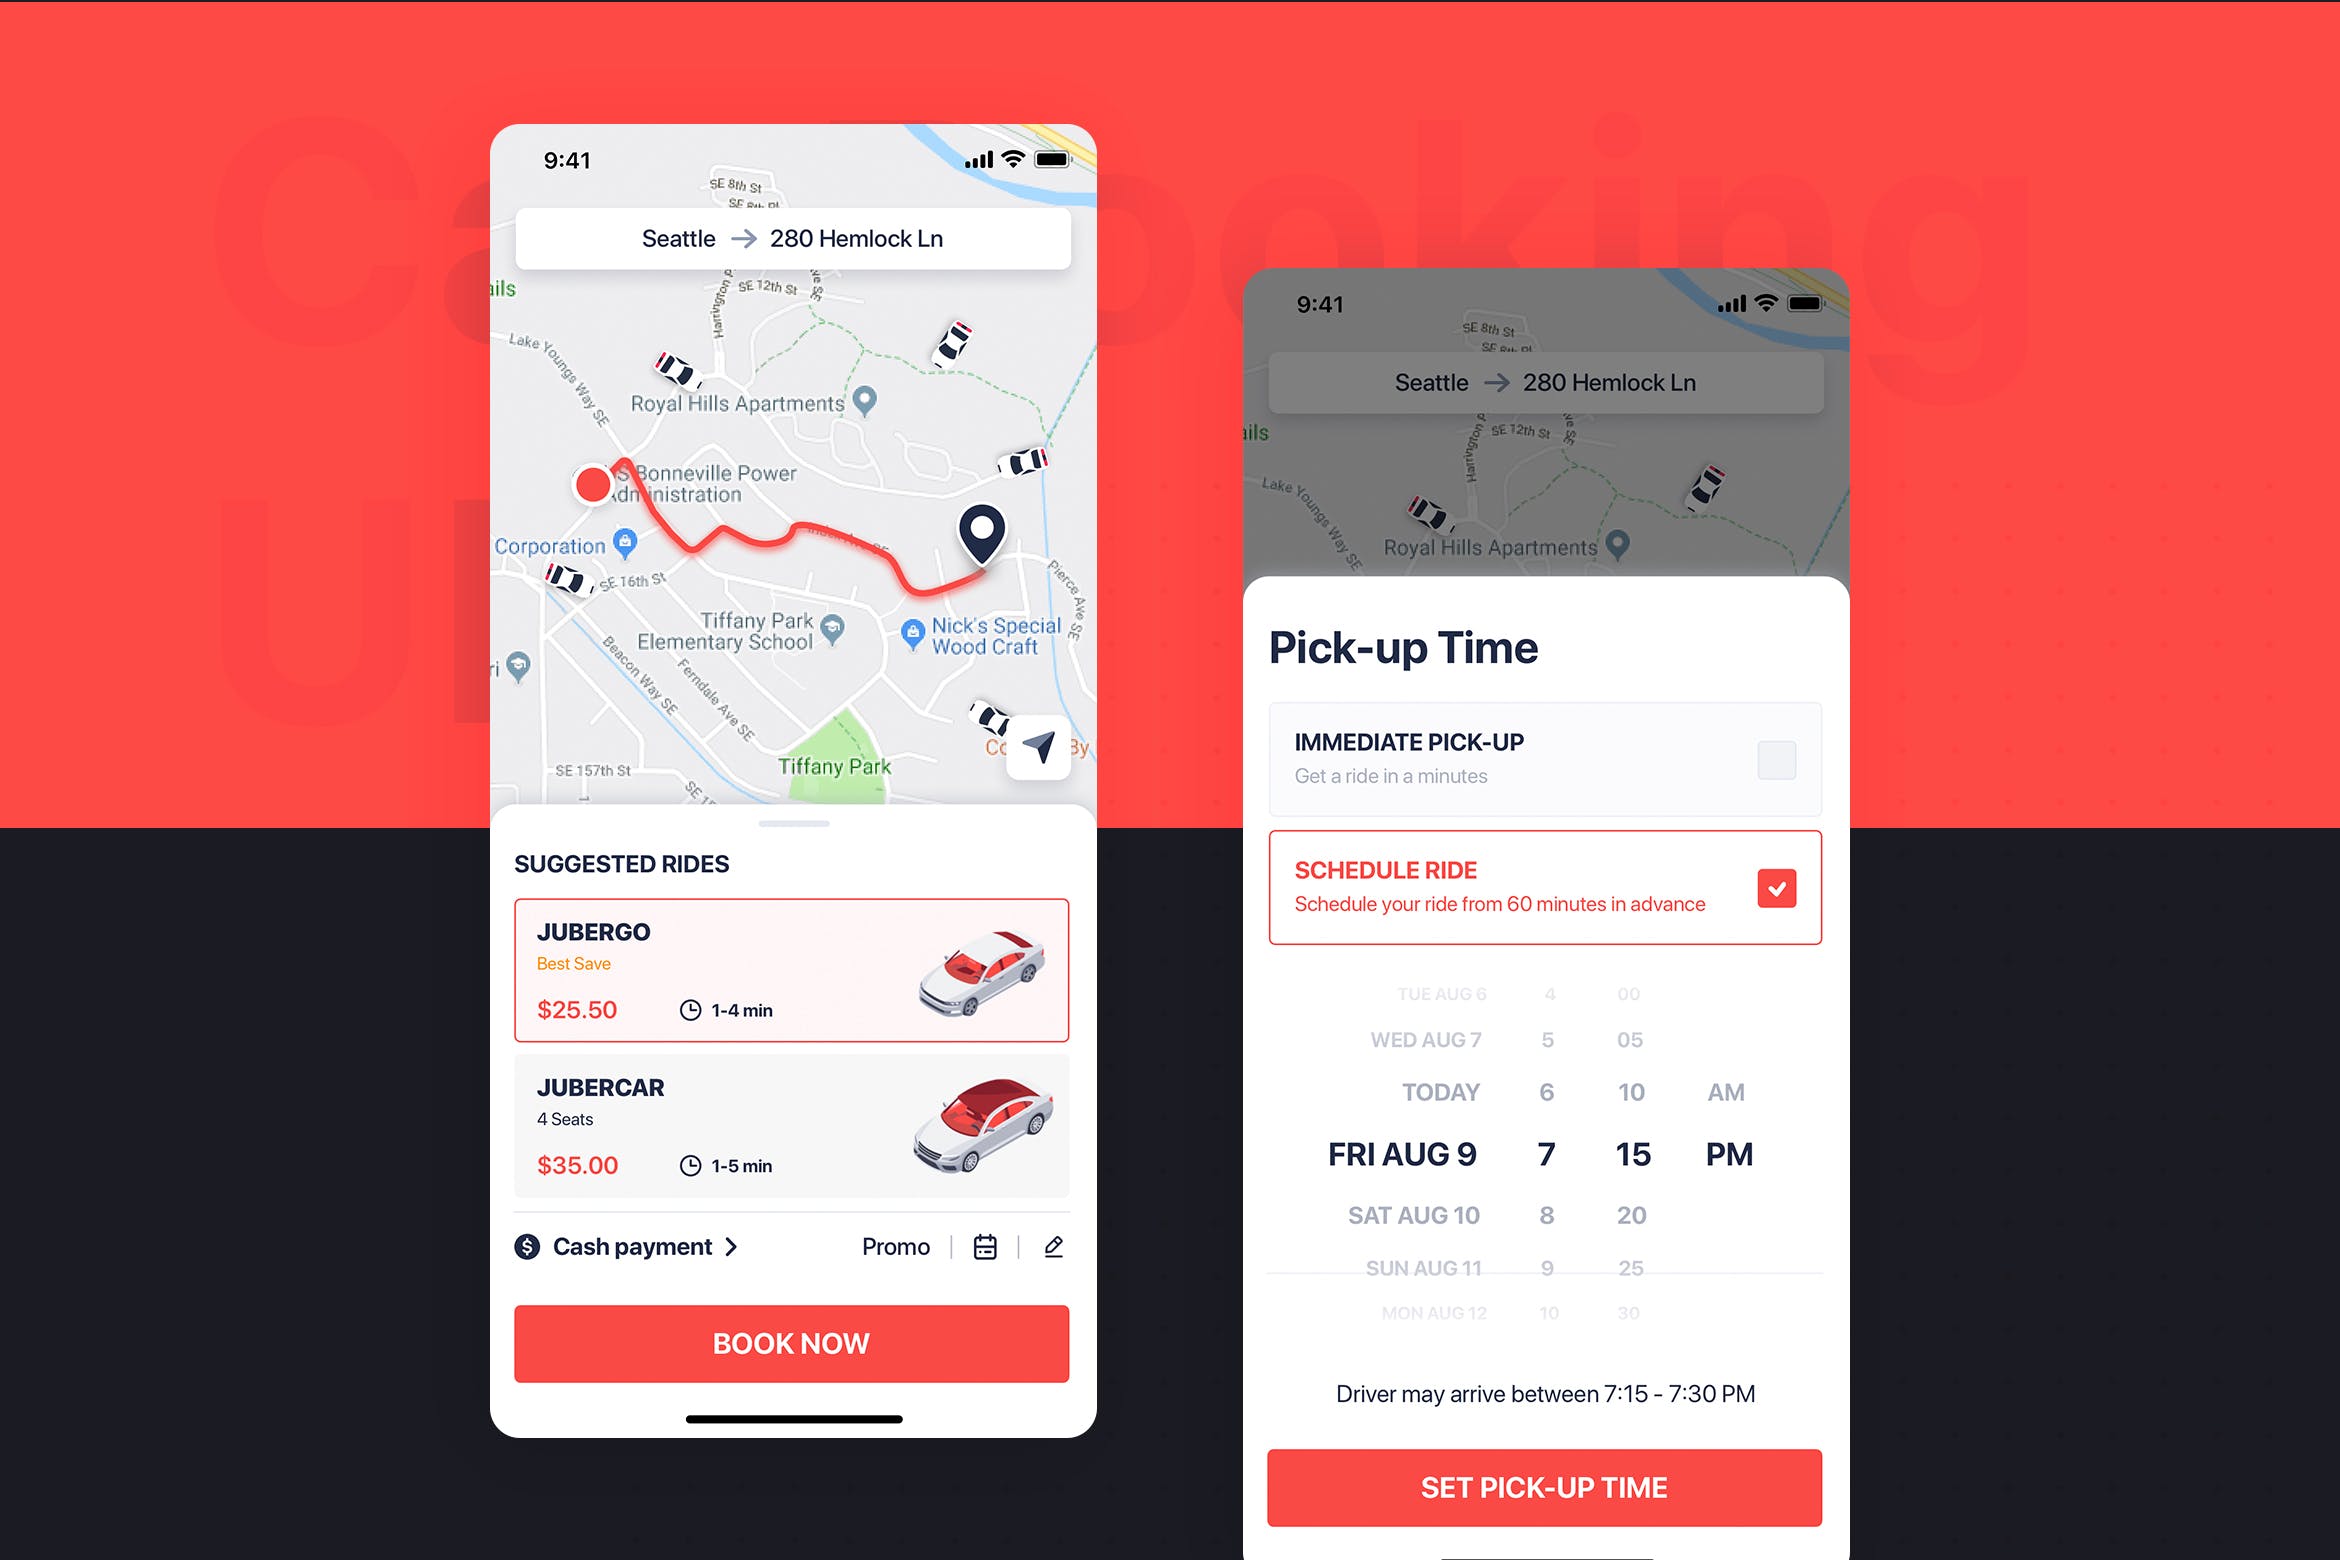 网约车APP应用UI设计之出行时间设置界面设计模板 Car Booking UI mobile concept – Pick-up Time插图